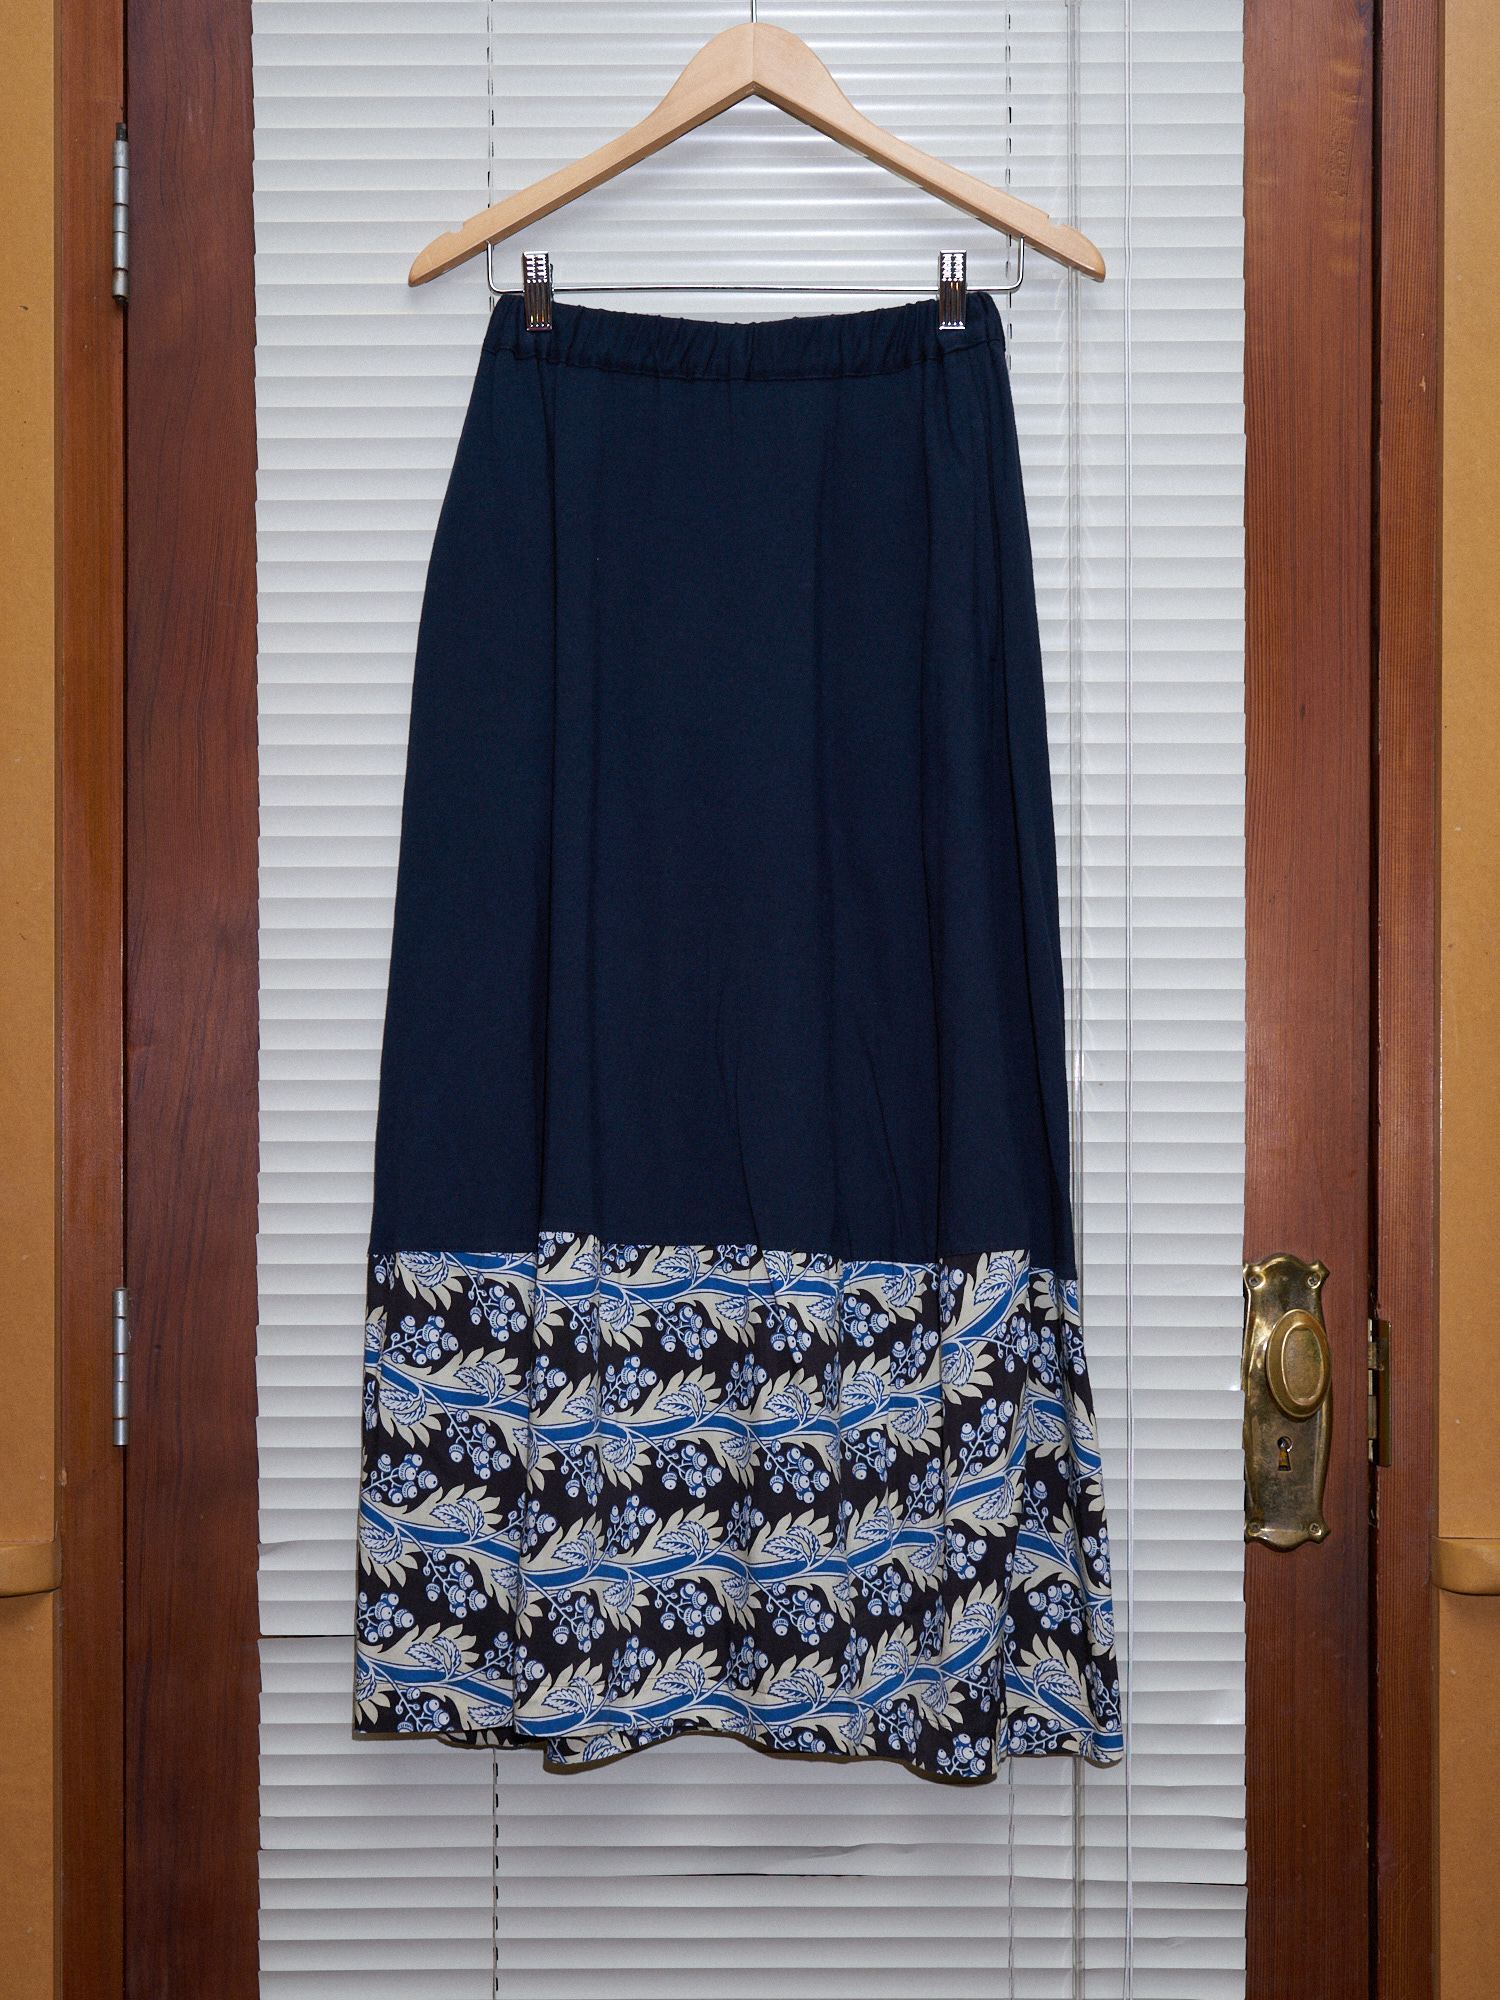 Comme des Garcons 1992 navy cotton jersey floral pattern hem panel skirt - sz M